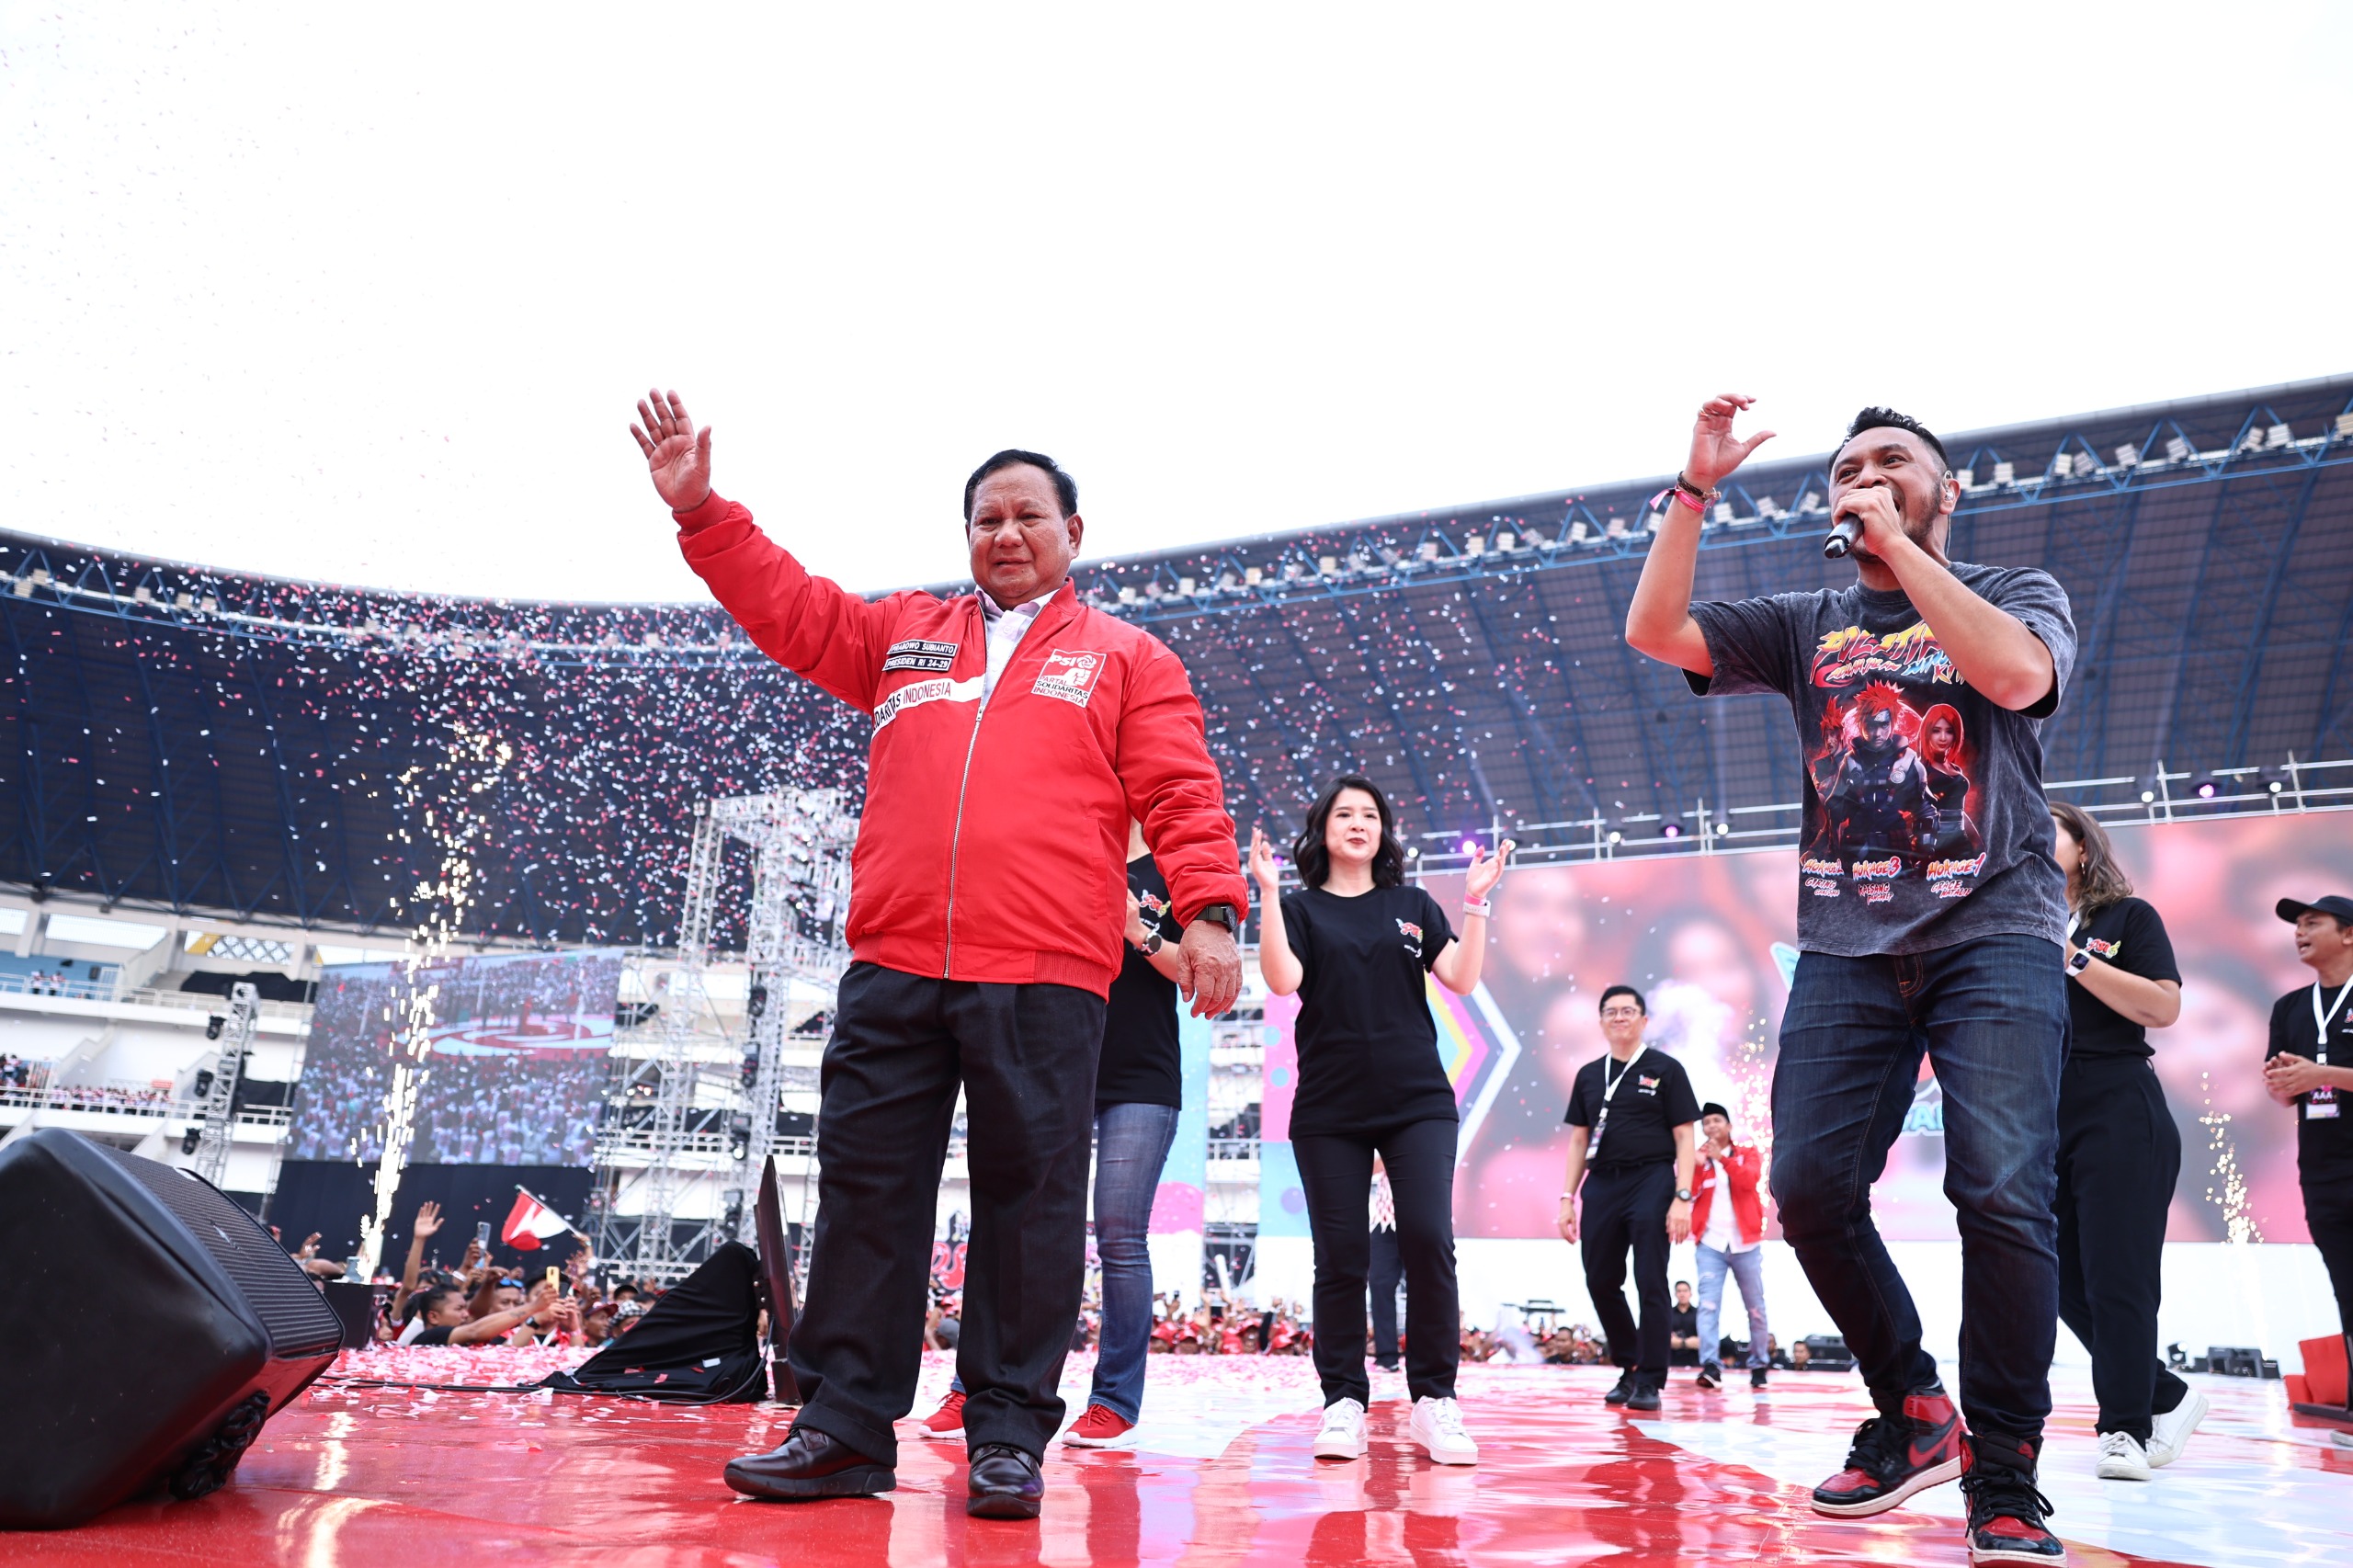 Pidato di HUT PSI, Prabowo Bangga Anak-anak Muda Putuskan Ikut Politik